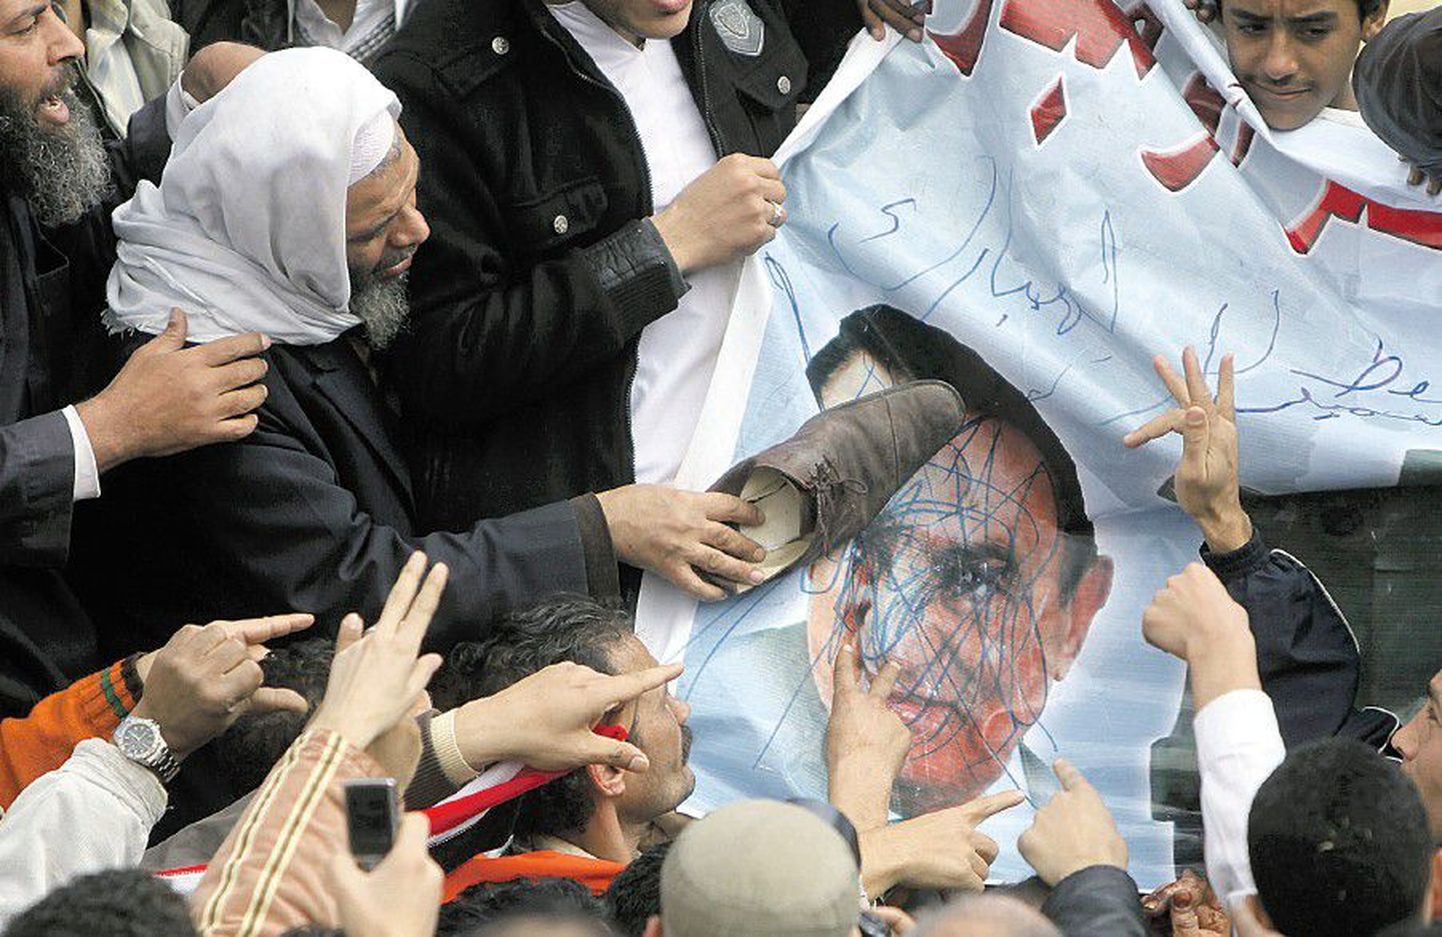 Беспорядки  в Египте не прекращаются. В воскресенье протестующие вымещали свою злость на портрете президента Египта Хосни Мубарака в Каире.